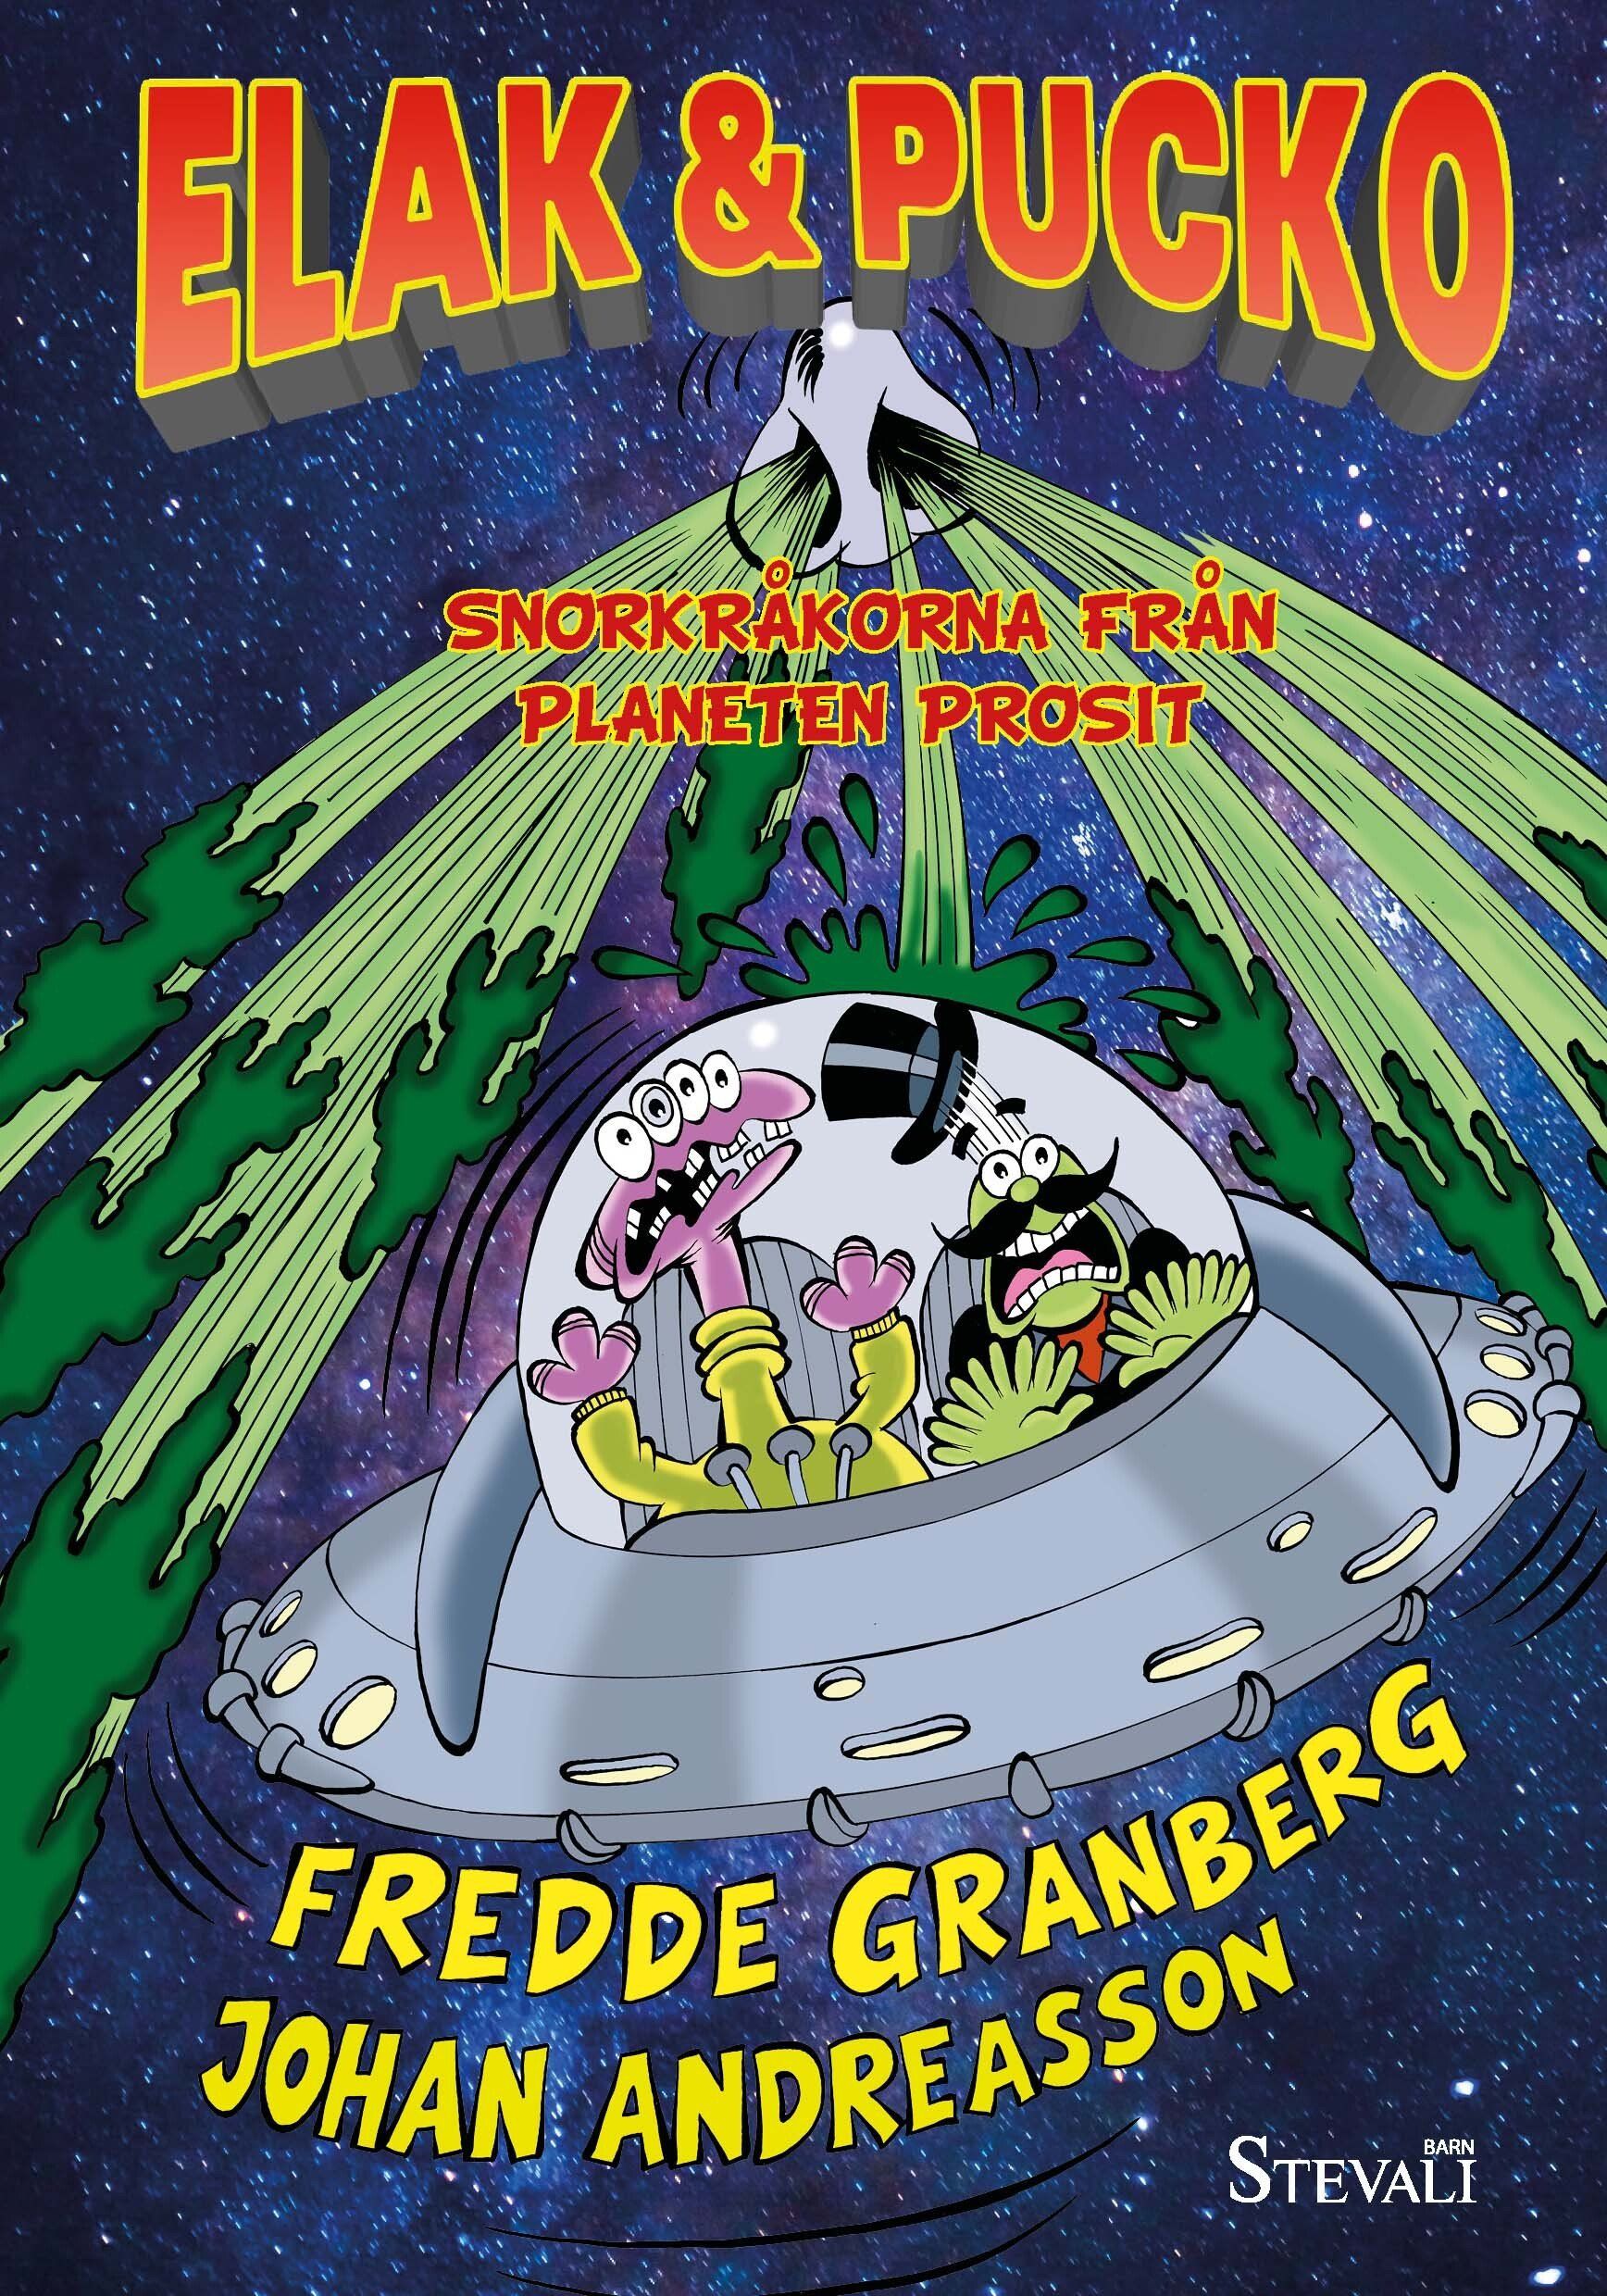 Boken Snorkråkorna från planeten Prosit är skriven av Fredde Granberg och illustrerad av Johan Andreasson på Stevali Bokförlag.